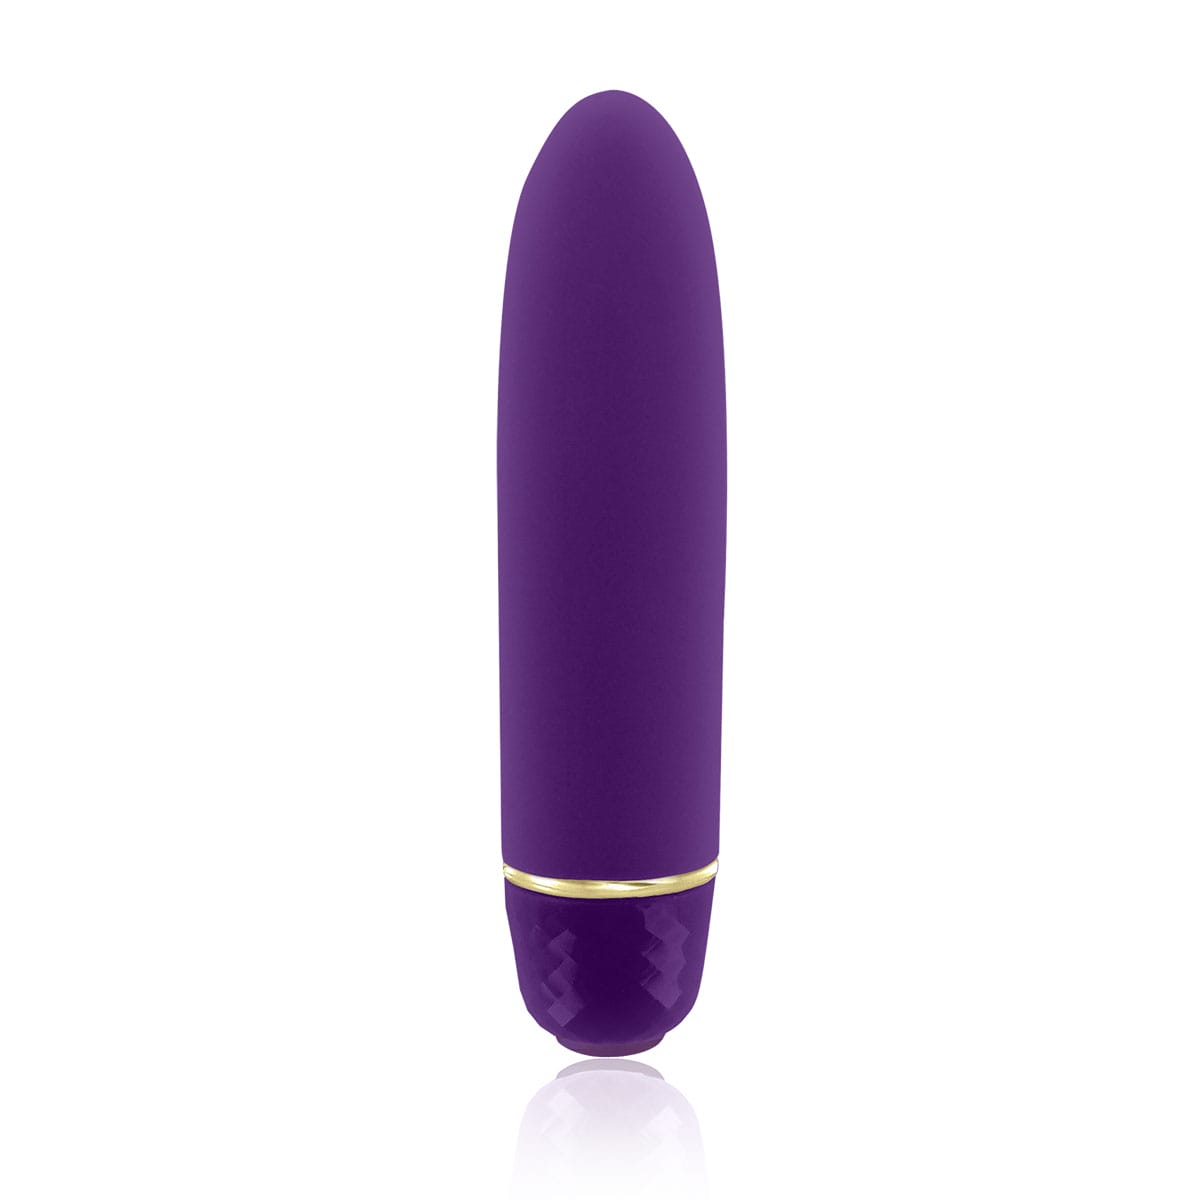 Buy a Rianne S Classique  Purple vibrator.